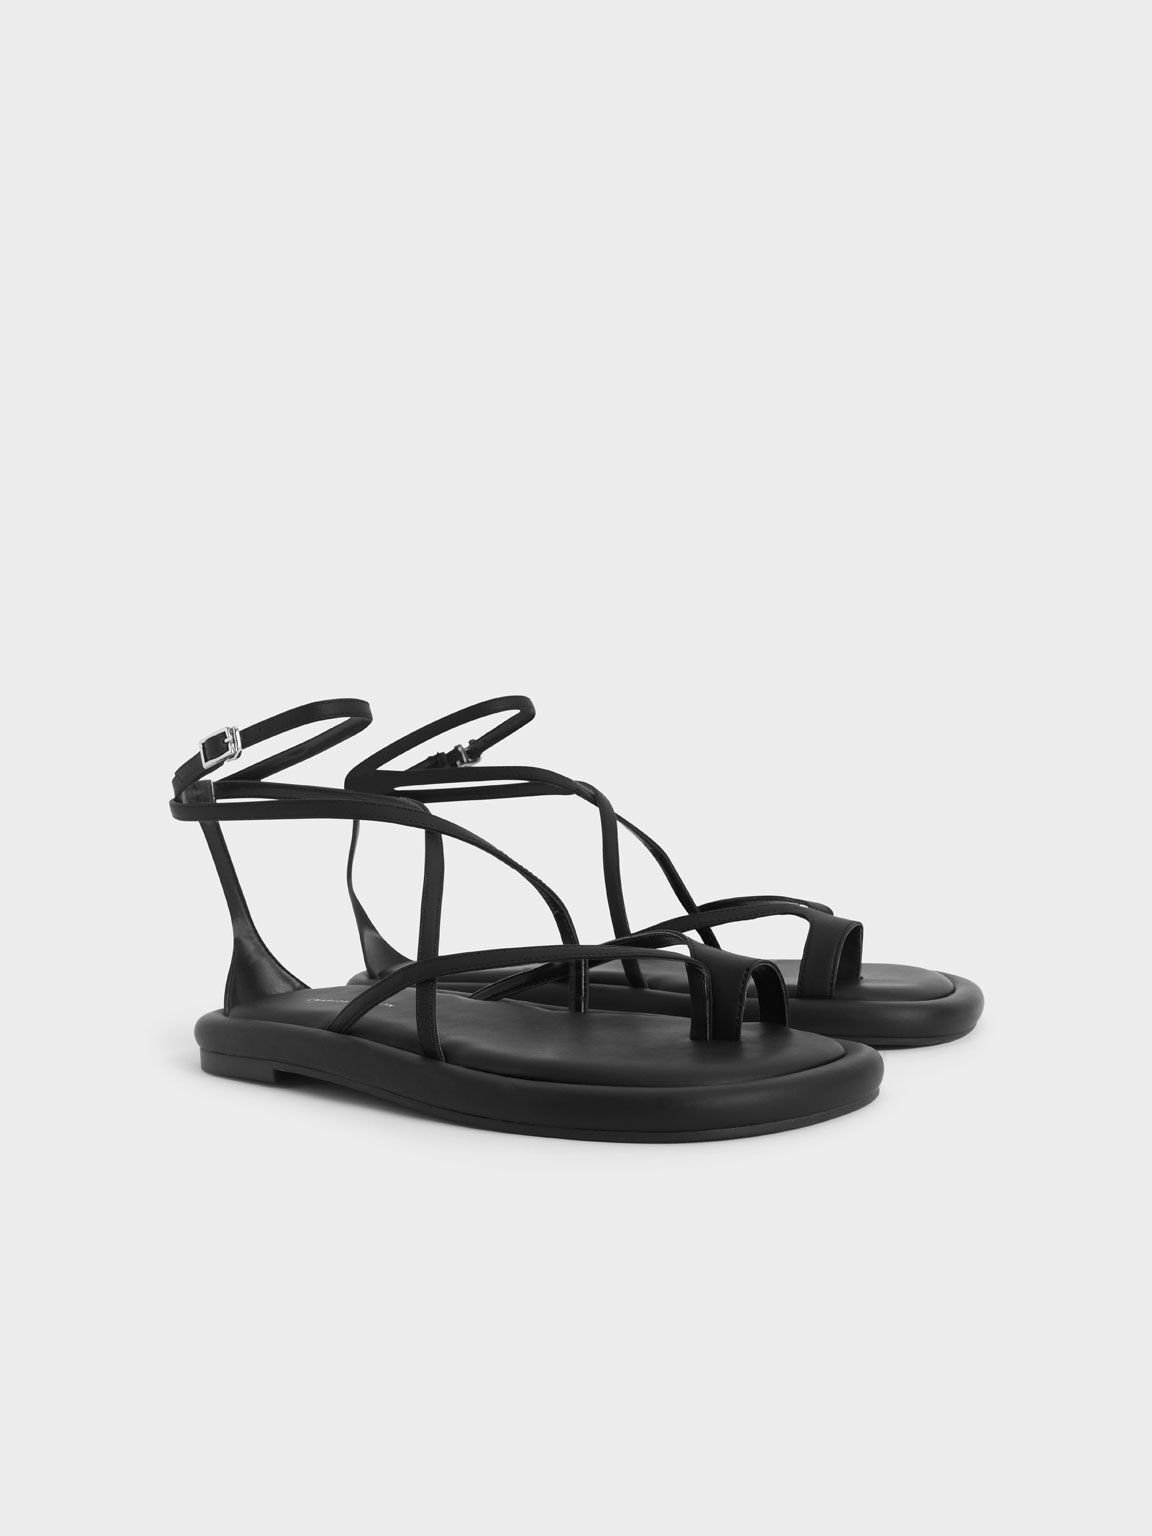 Padded Toe Loop Sandals, Black, hi-res